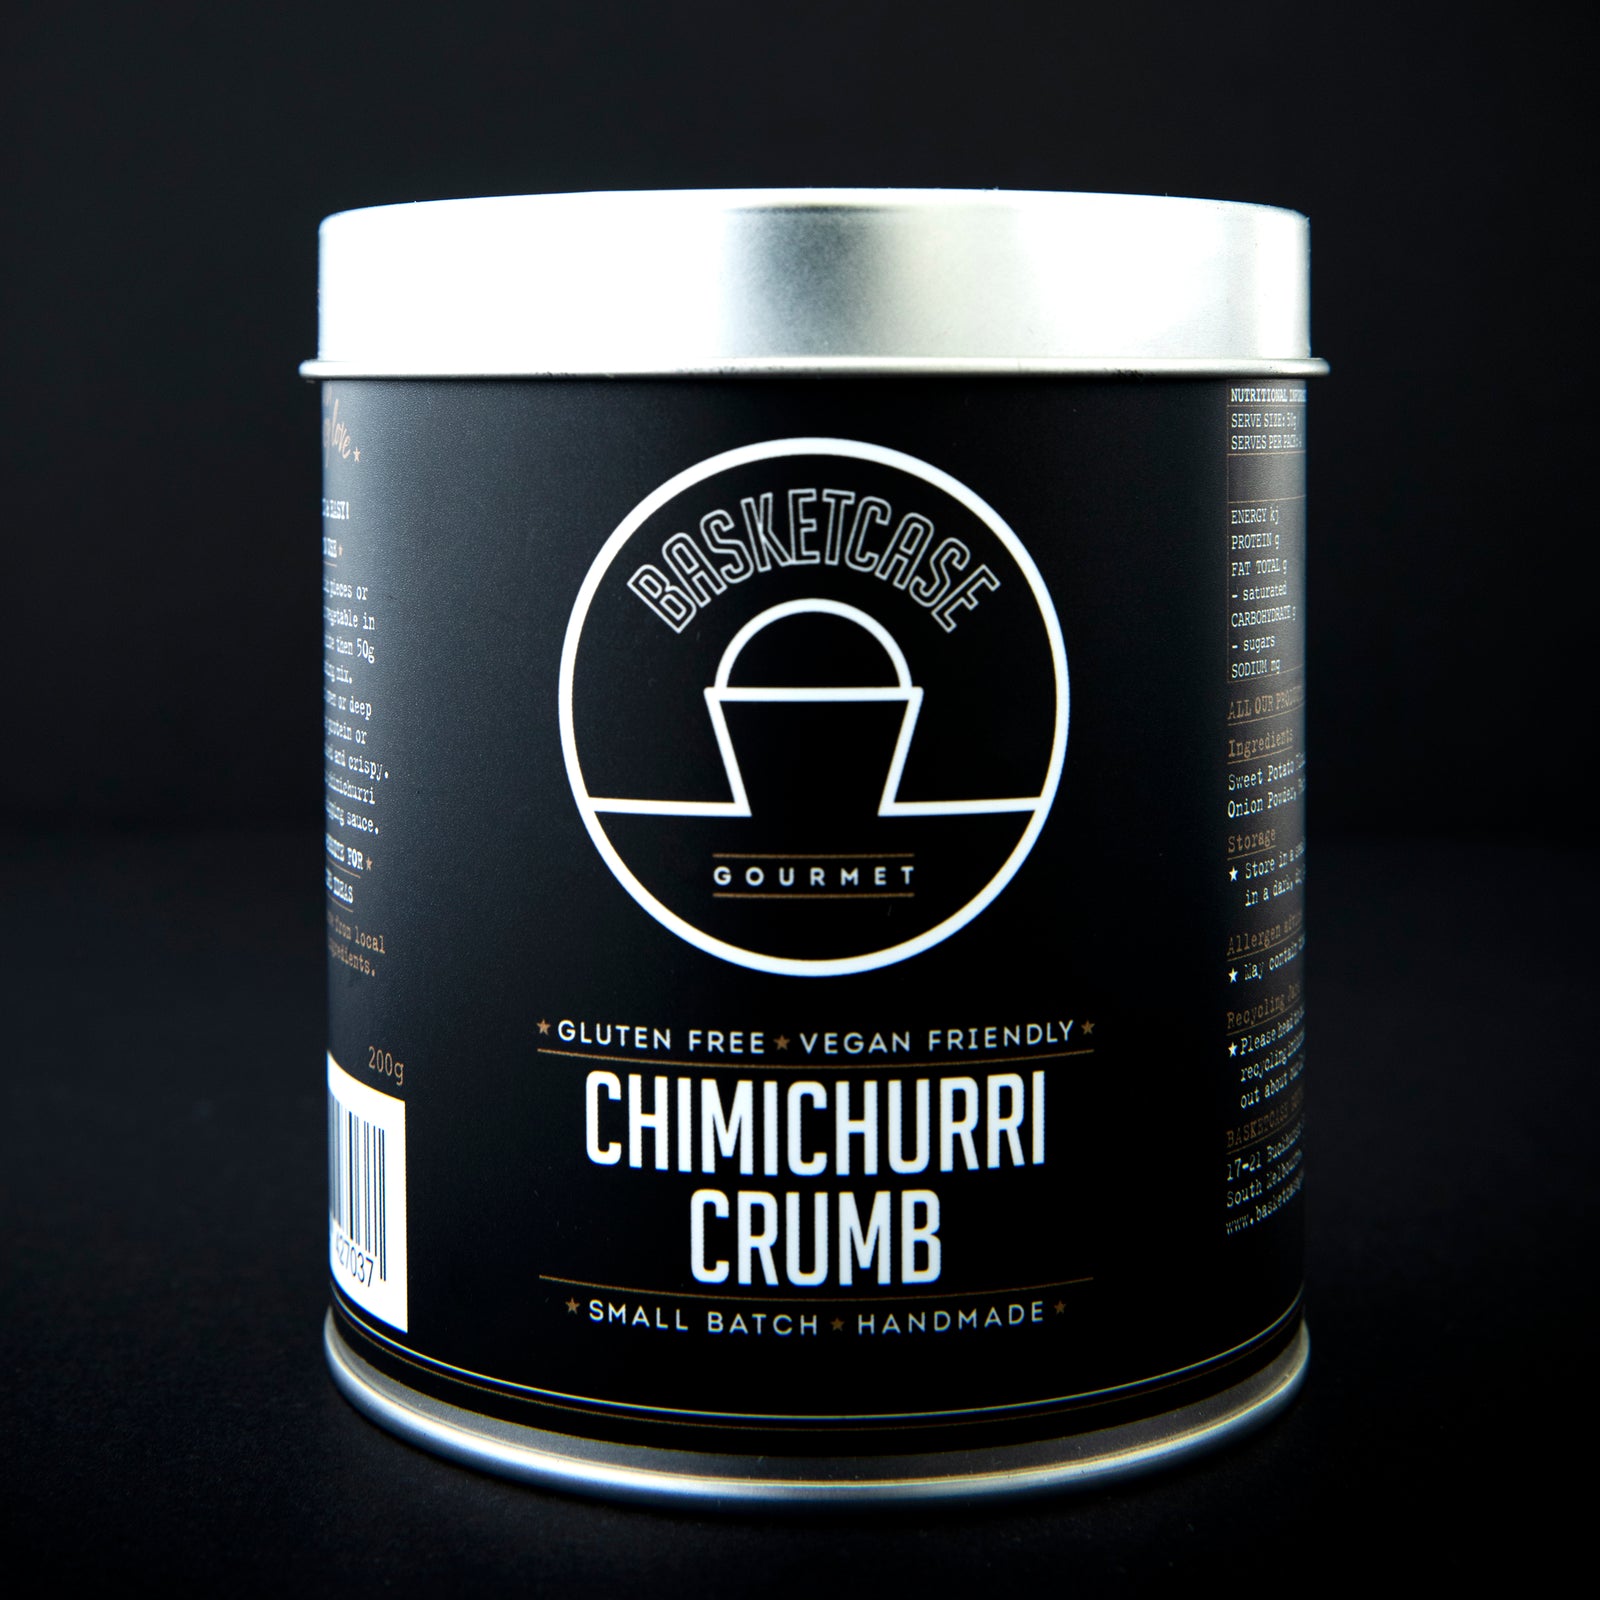 Chimichurri Crumb